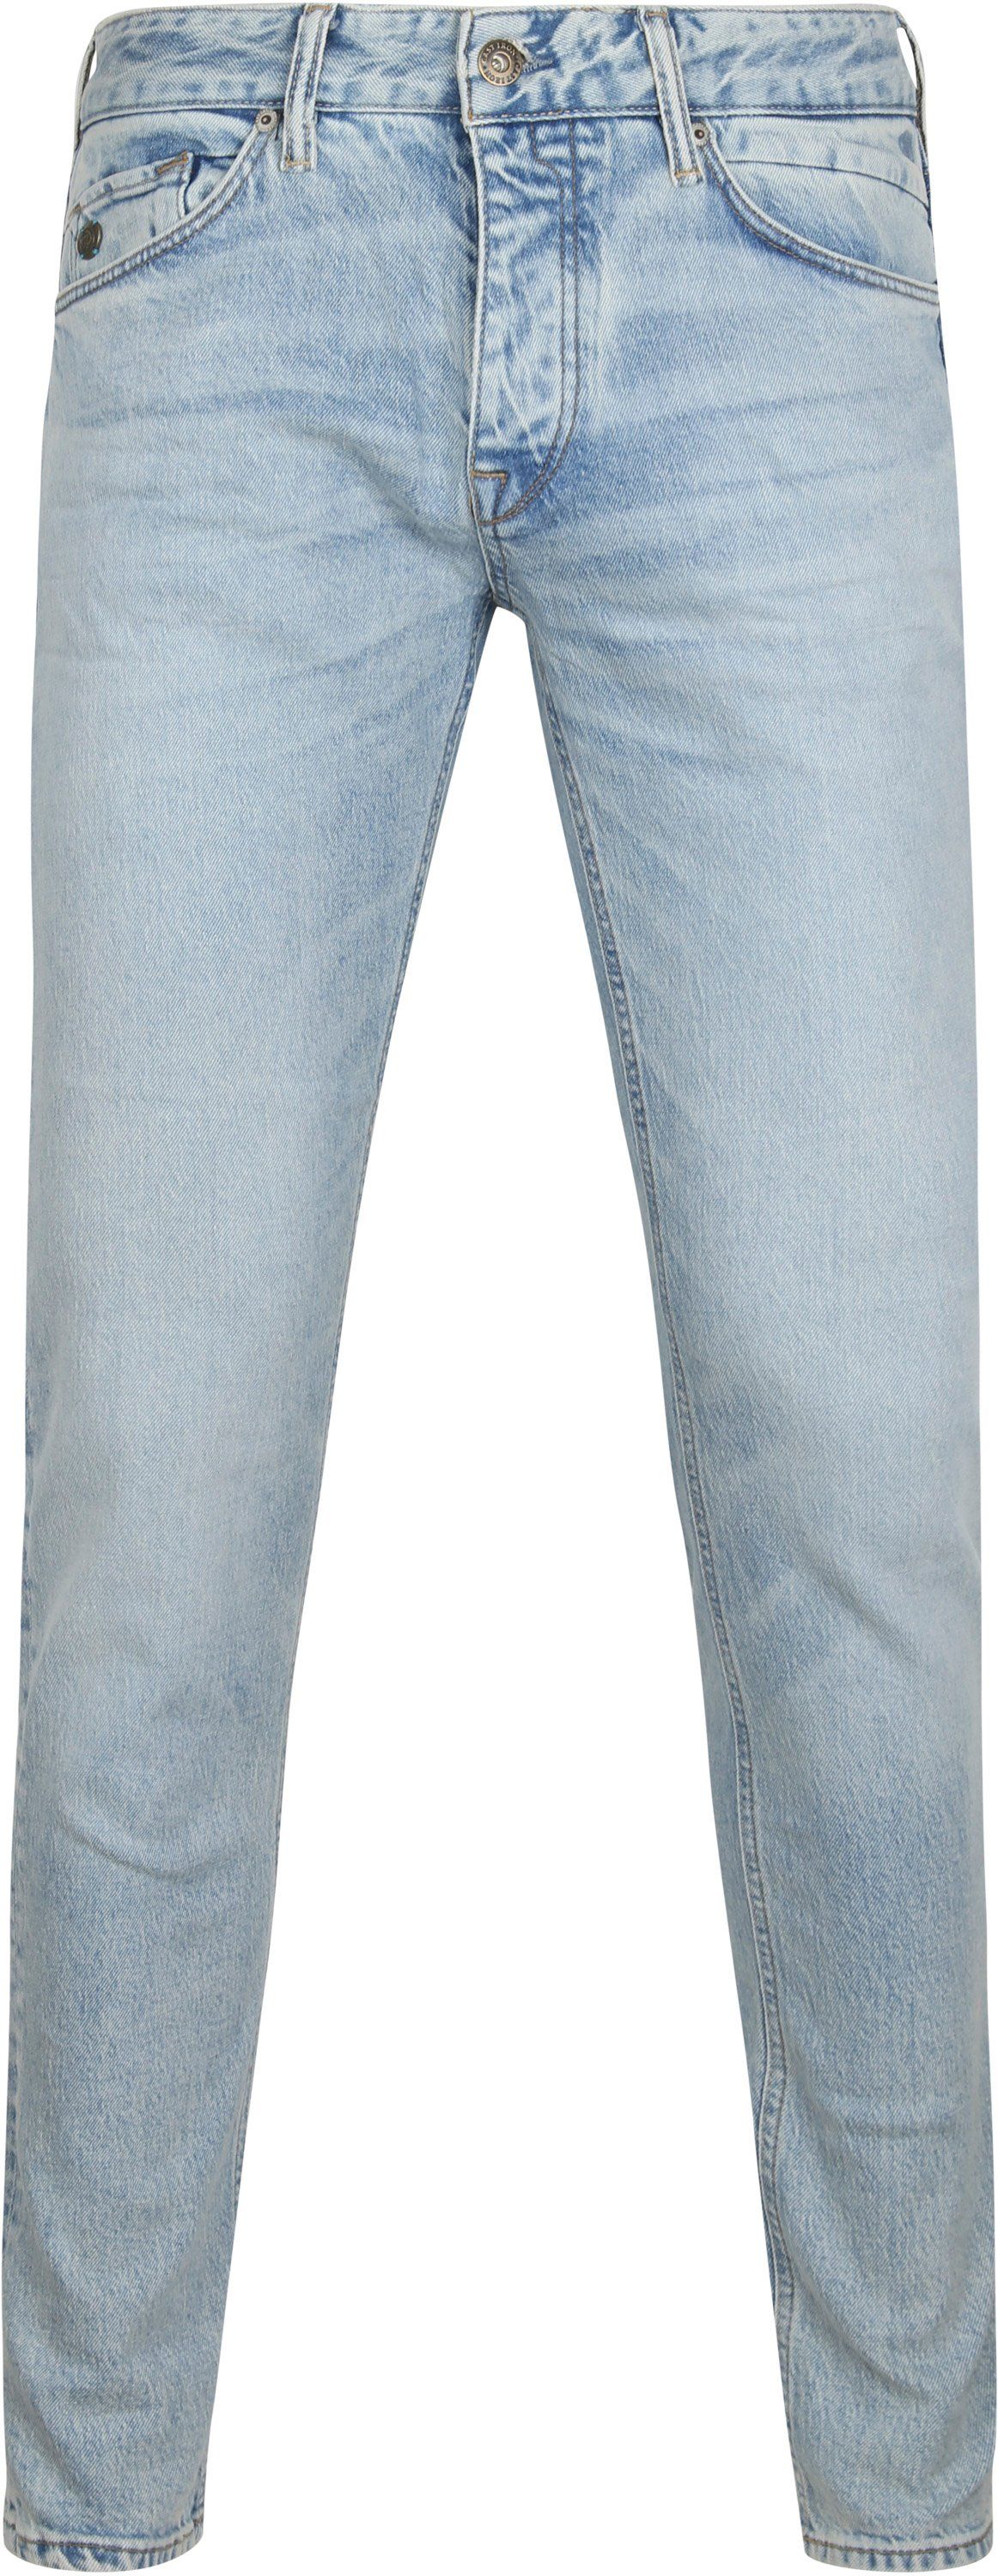 Cast Iron Riser Jeans Slim Light Blue size W 30